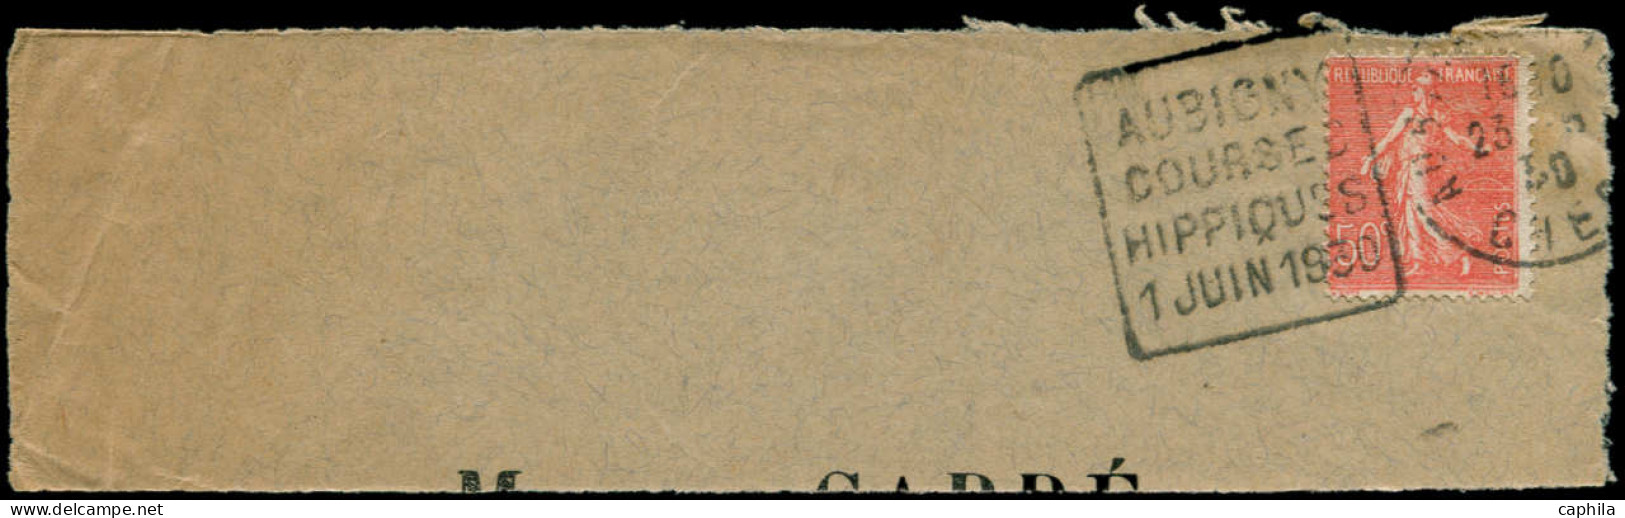 LET Chevaux - Poste - France, Enveloppe (fragment), Daguin:" Aubigny Courses Hippiques 1 Juin 1930" - Caballos